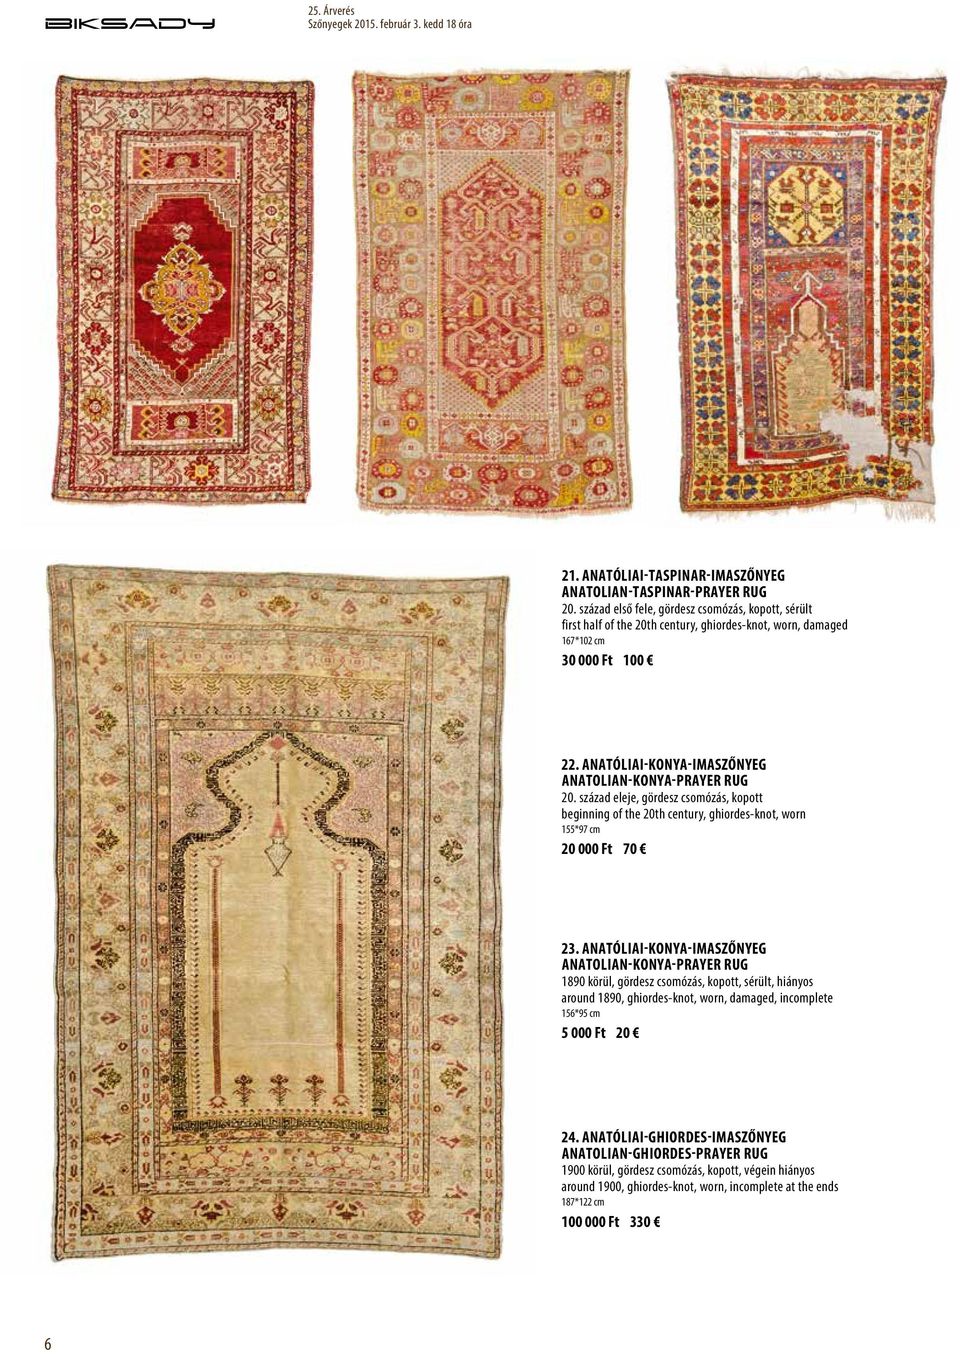 Anatóliai-Konya-imaszőnyeg Anatolian-Konya-prayer rug 20. század eleje, gördesz csomózás, kopott beginning of the 20th century, ghiordes-knot, worn 155*97 cm 20 000 Ft 70 23.